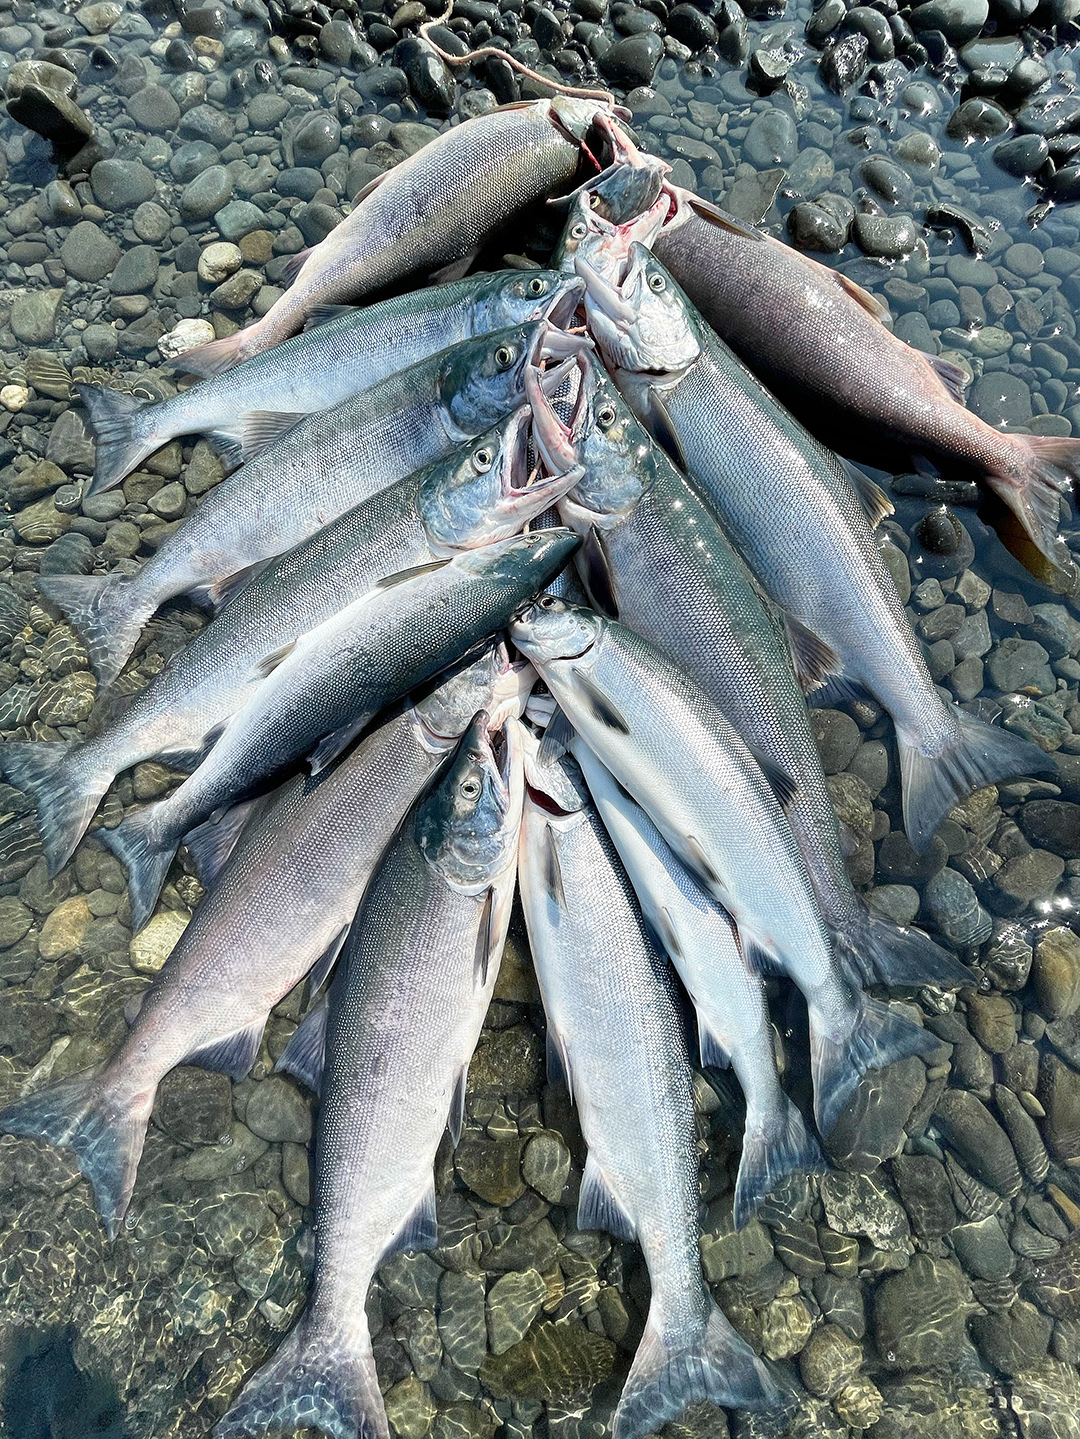 kenai salmon fishing